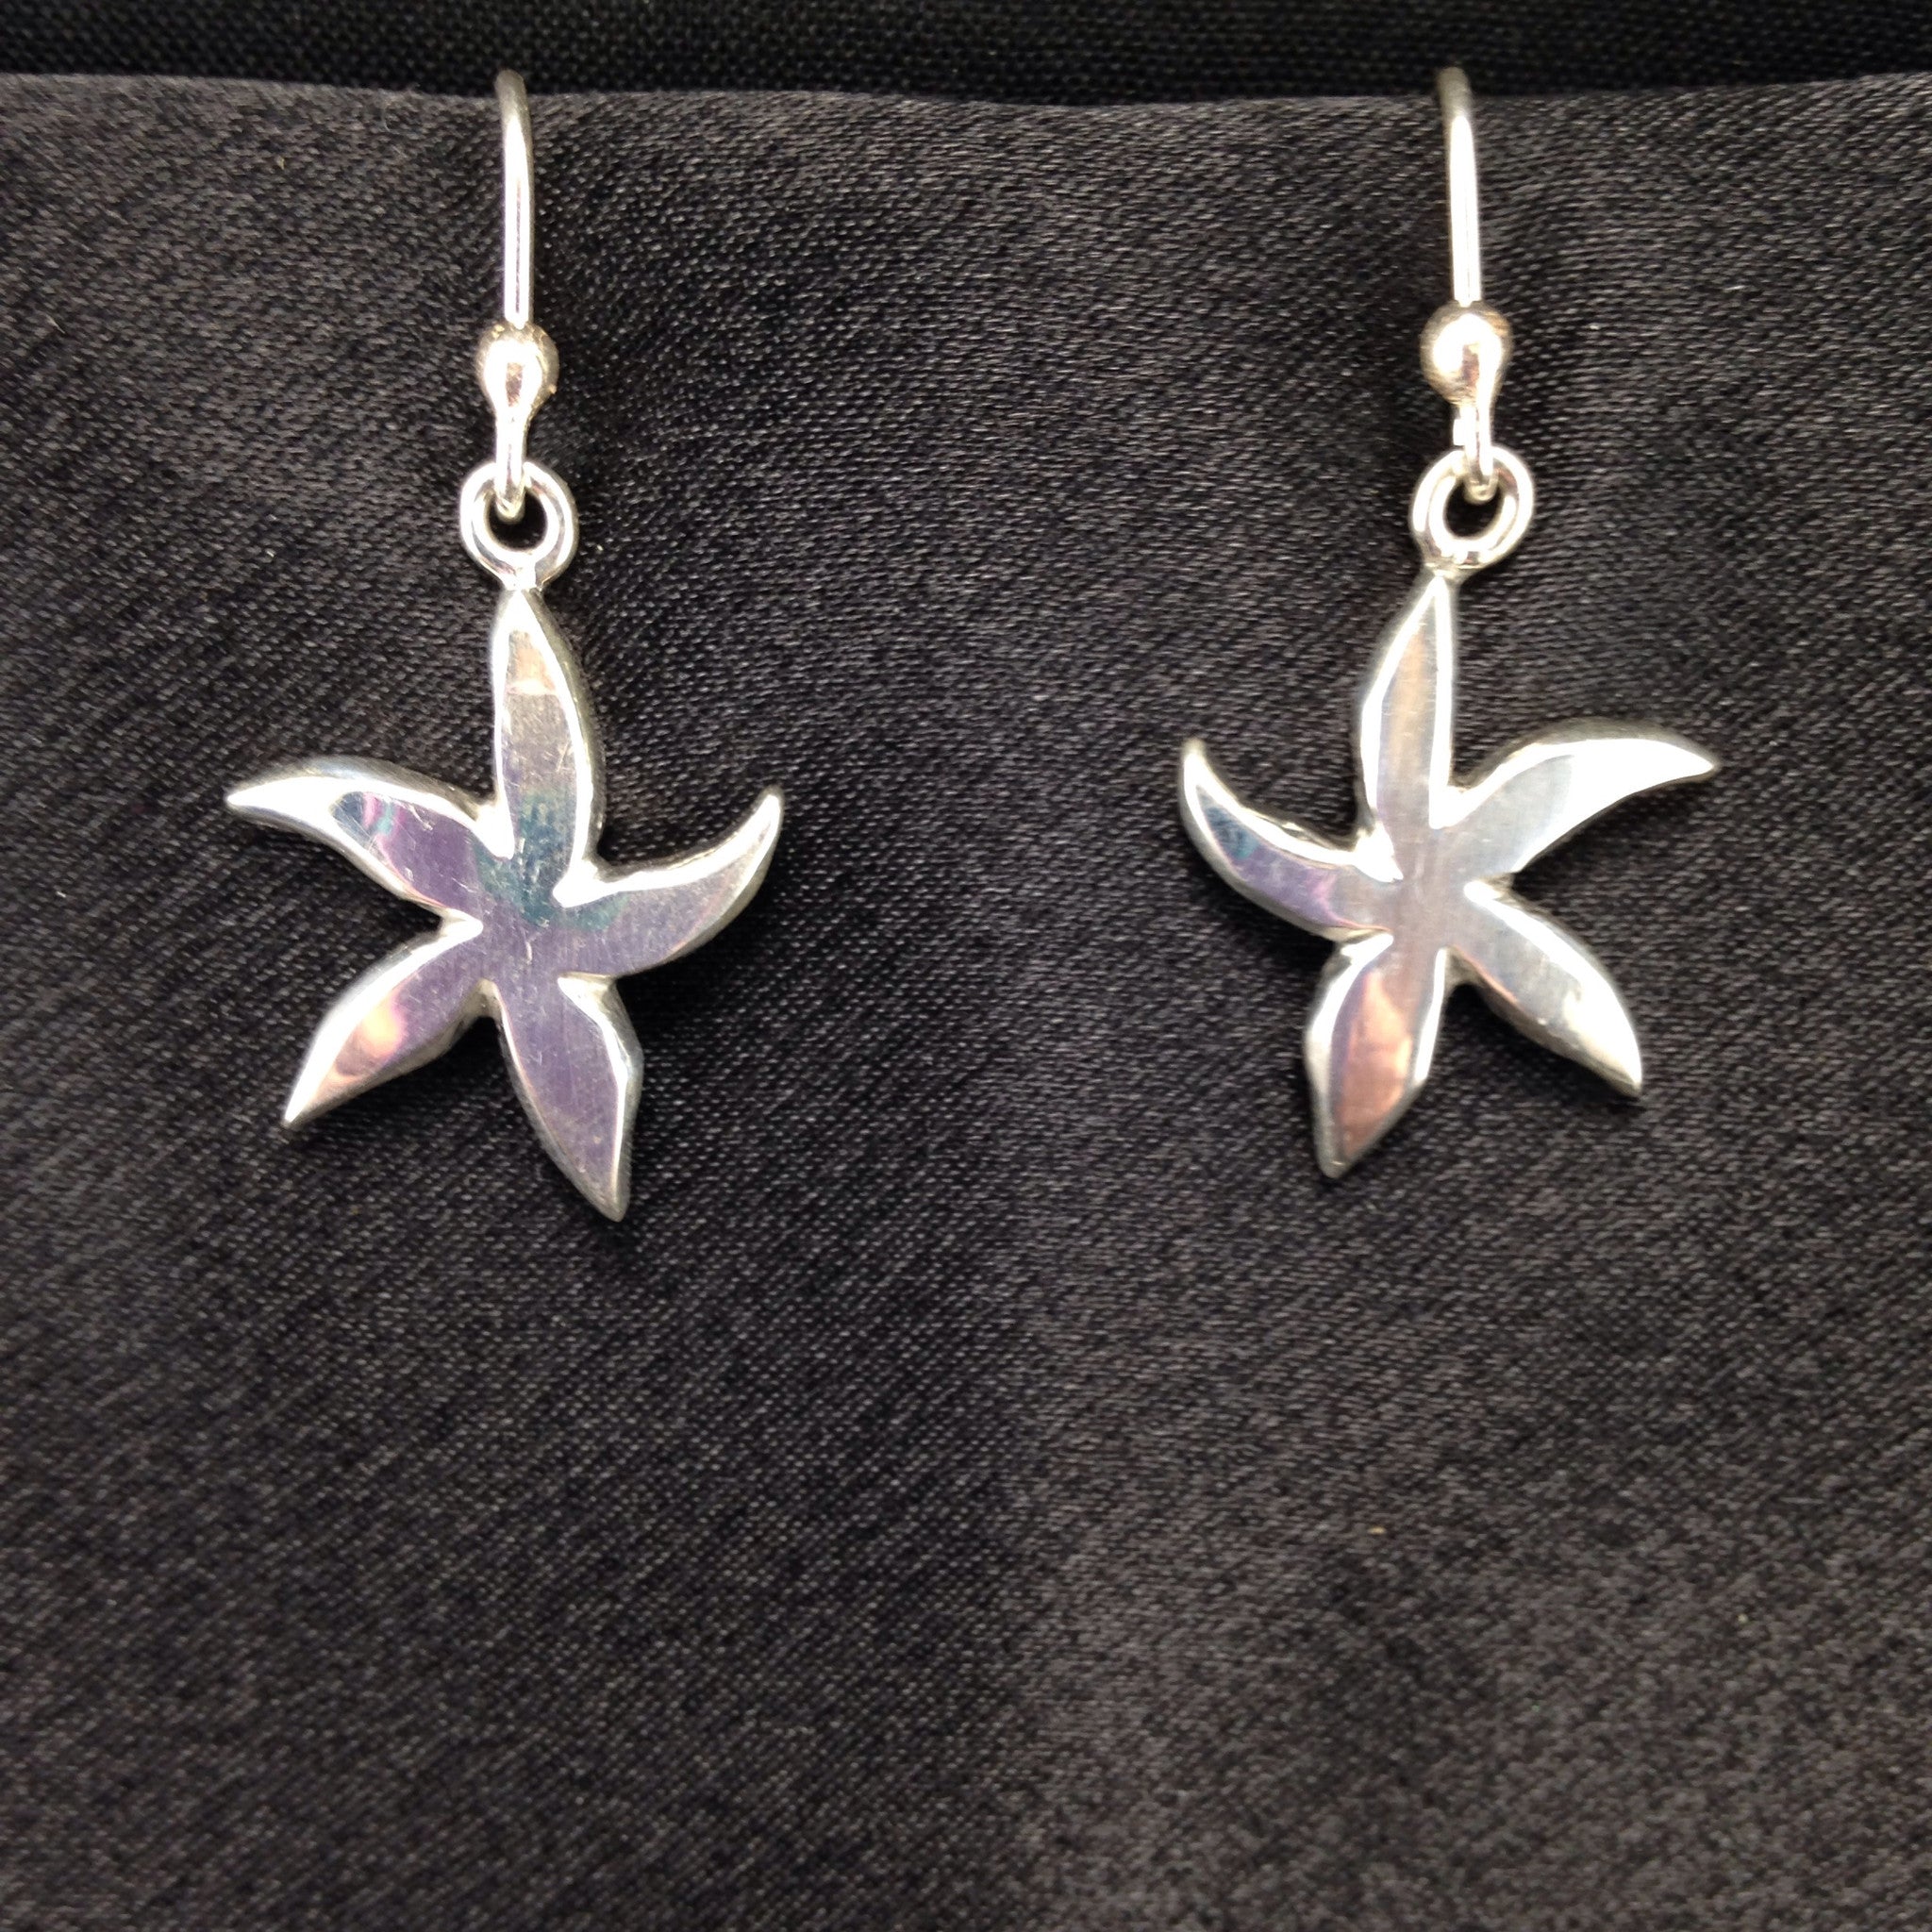 Drop Earrings Silver Starfish-Jenstones Jewelry